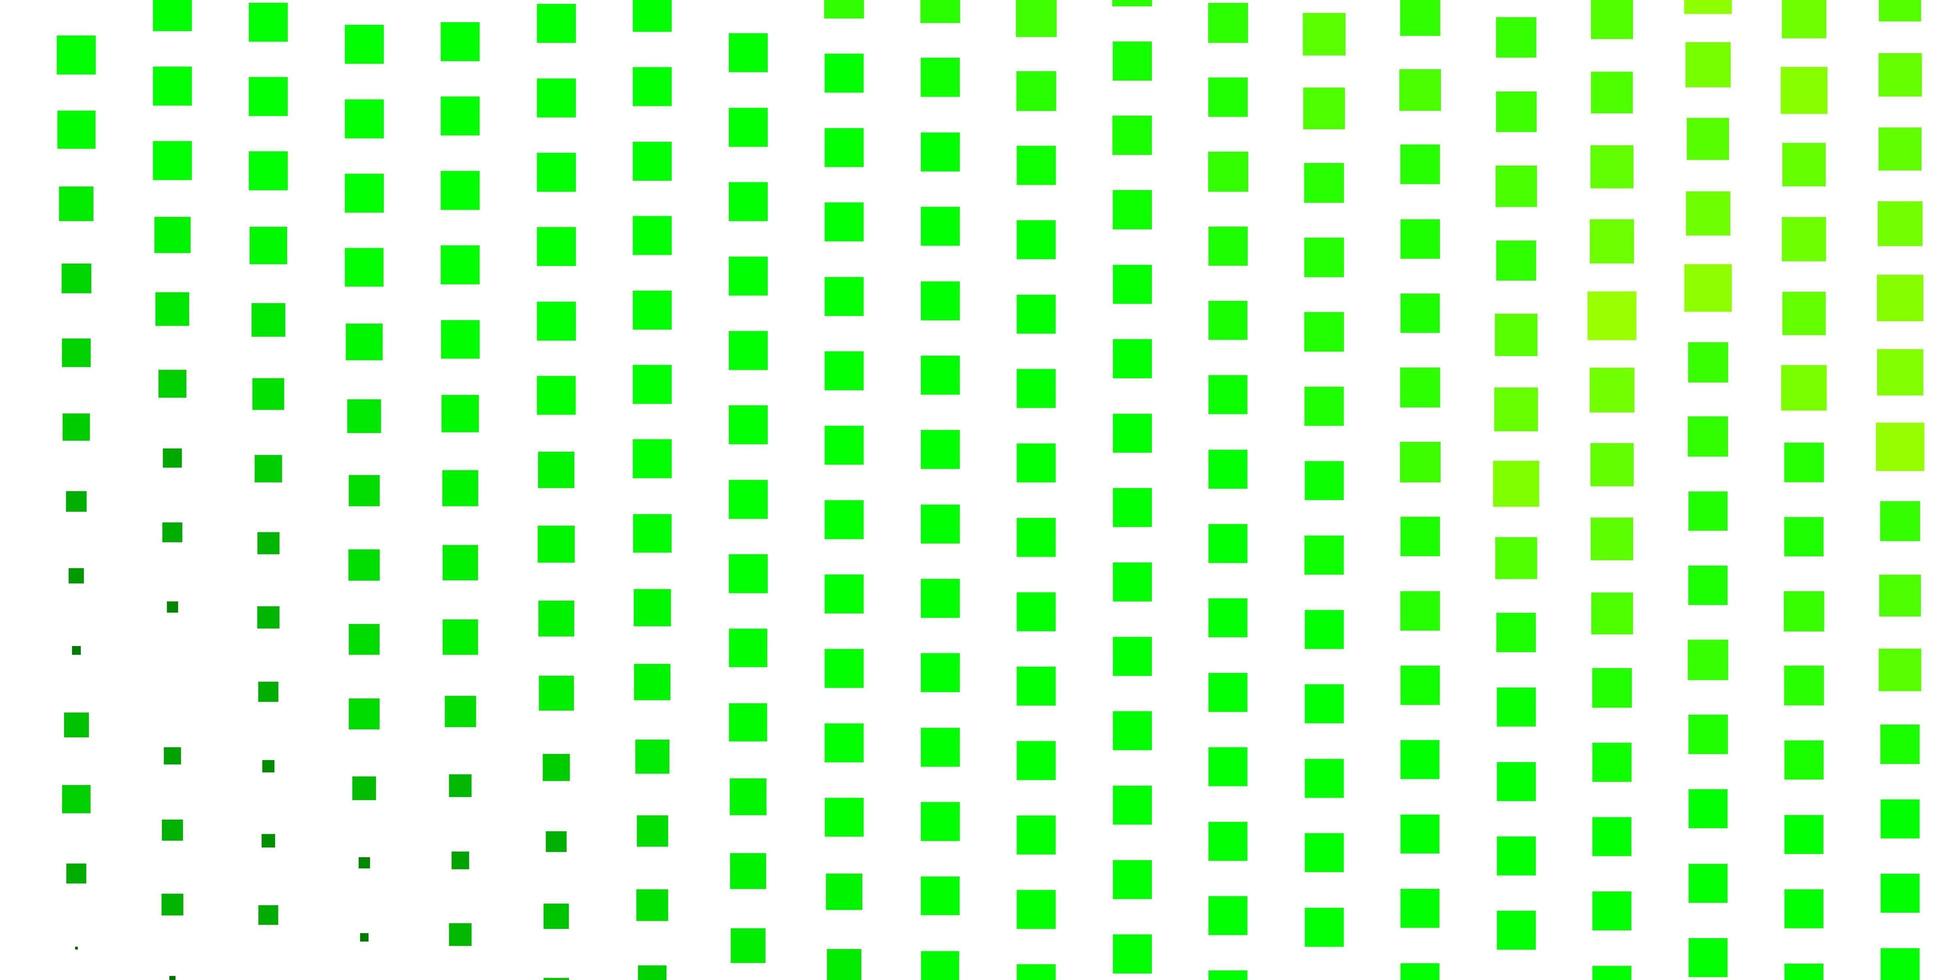 hellgrünes, gelbes Vektorlayout mit Linien, Rechtecken. vektor